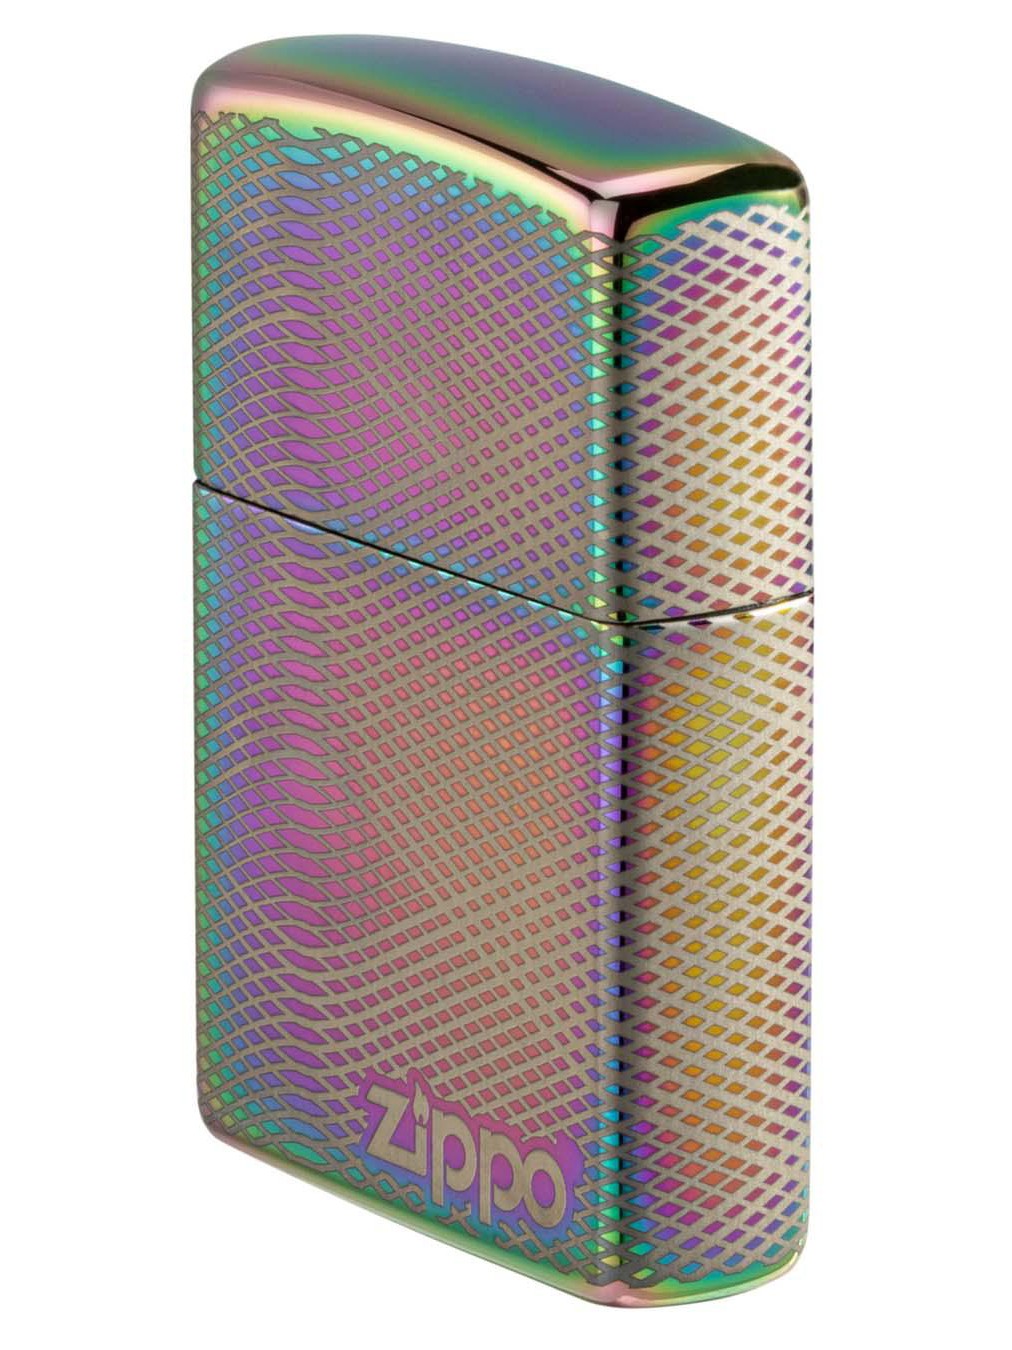 Zippo Lighter: Wave Design, 360 Laser Engraved - Multi-Color 49941